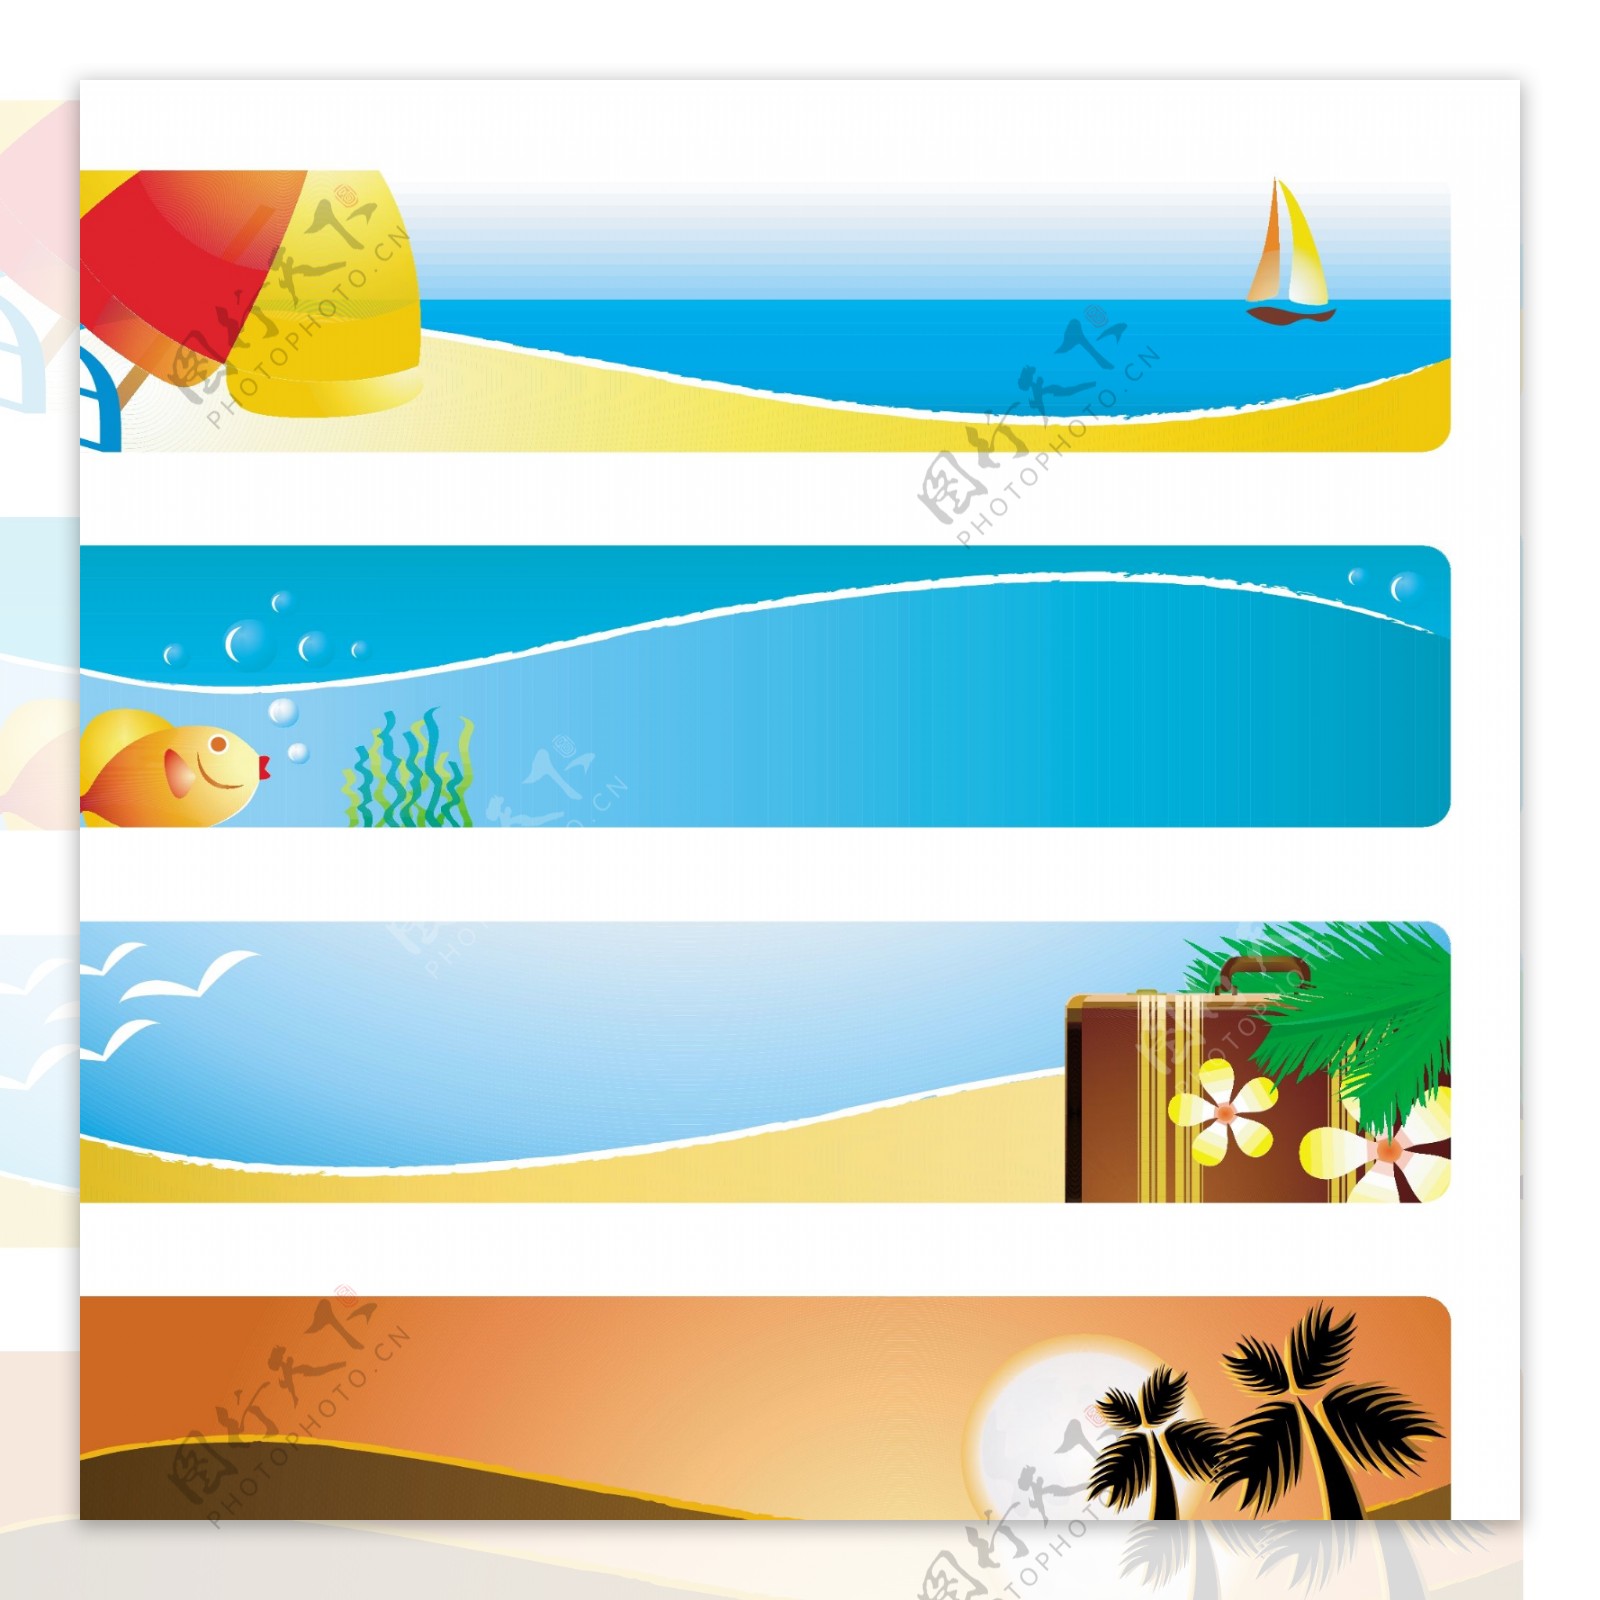 阳光明媚的海滩横幅banner矢量素材